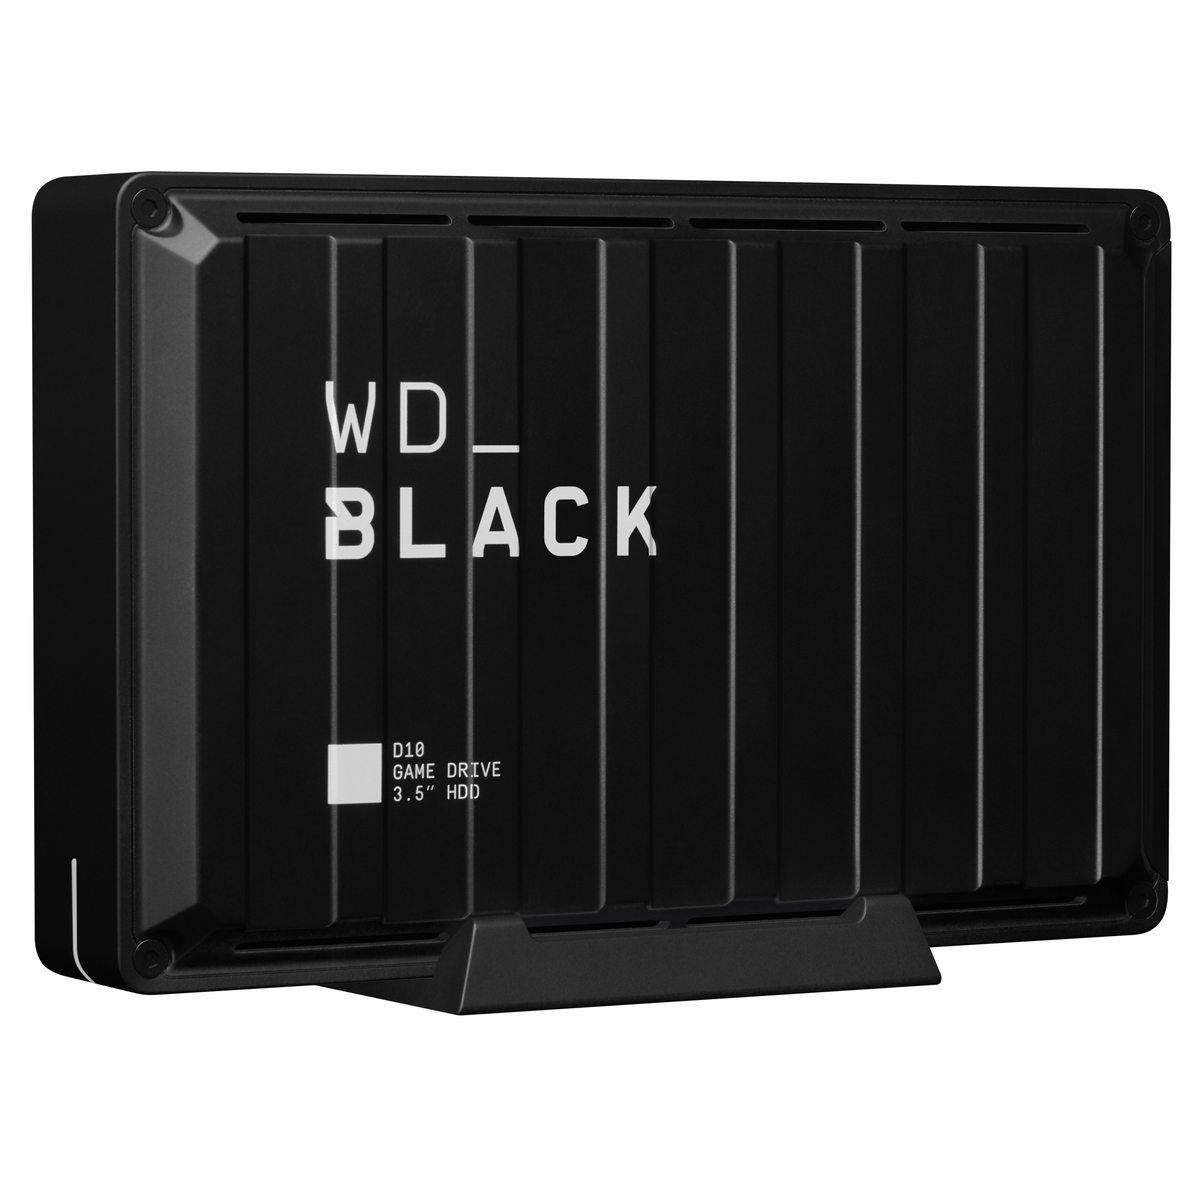 Externe Festplatte 8 TB WD BLACK D10 GAME DRIVE